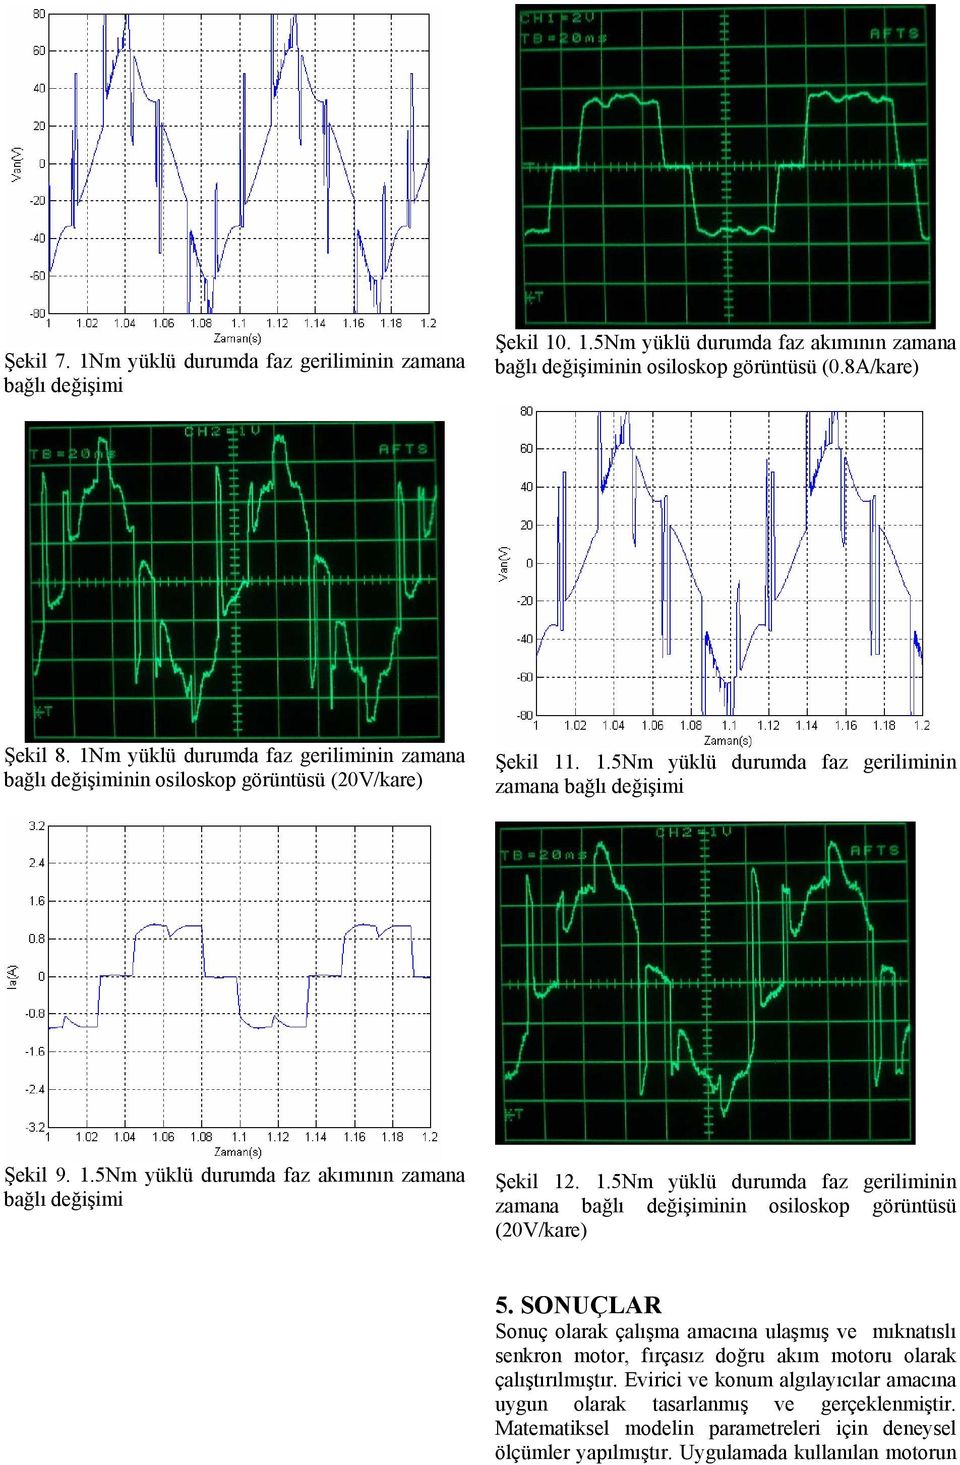 1.5Nm yüklü duumd fz geiliminin zmn ğlı değişiminin osiloskop göüntüsü (2V/ke) 5.